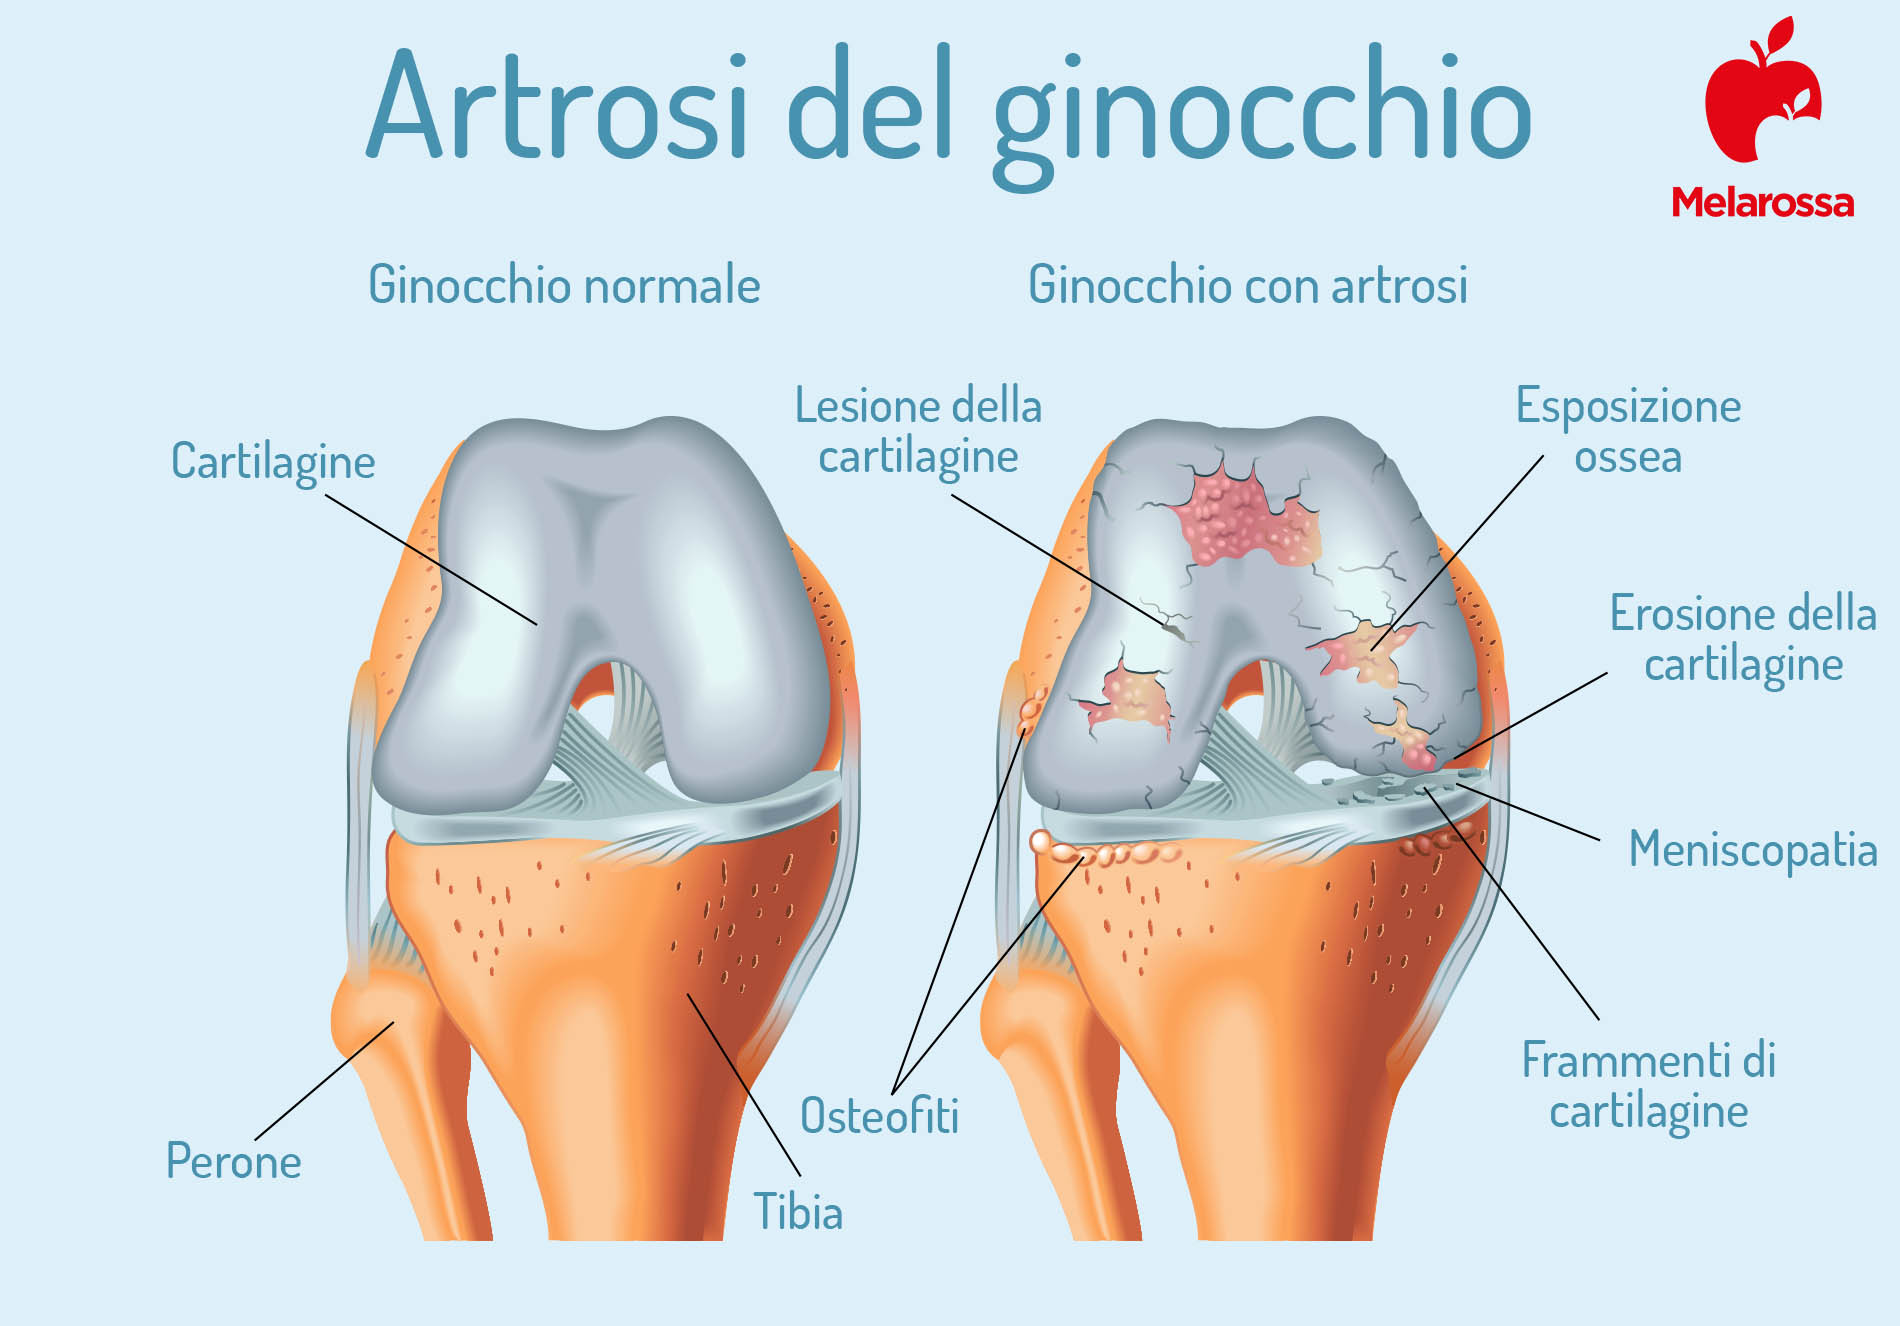 artrosi: ginocchio